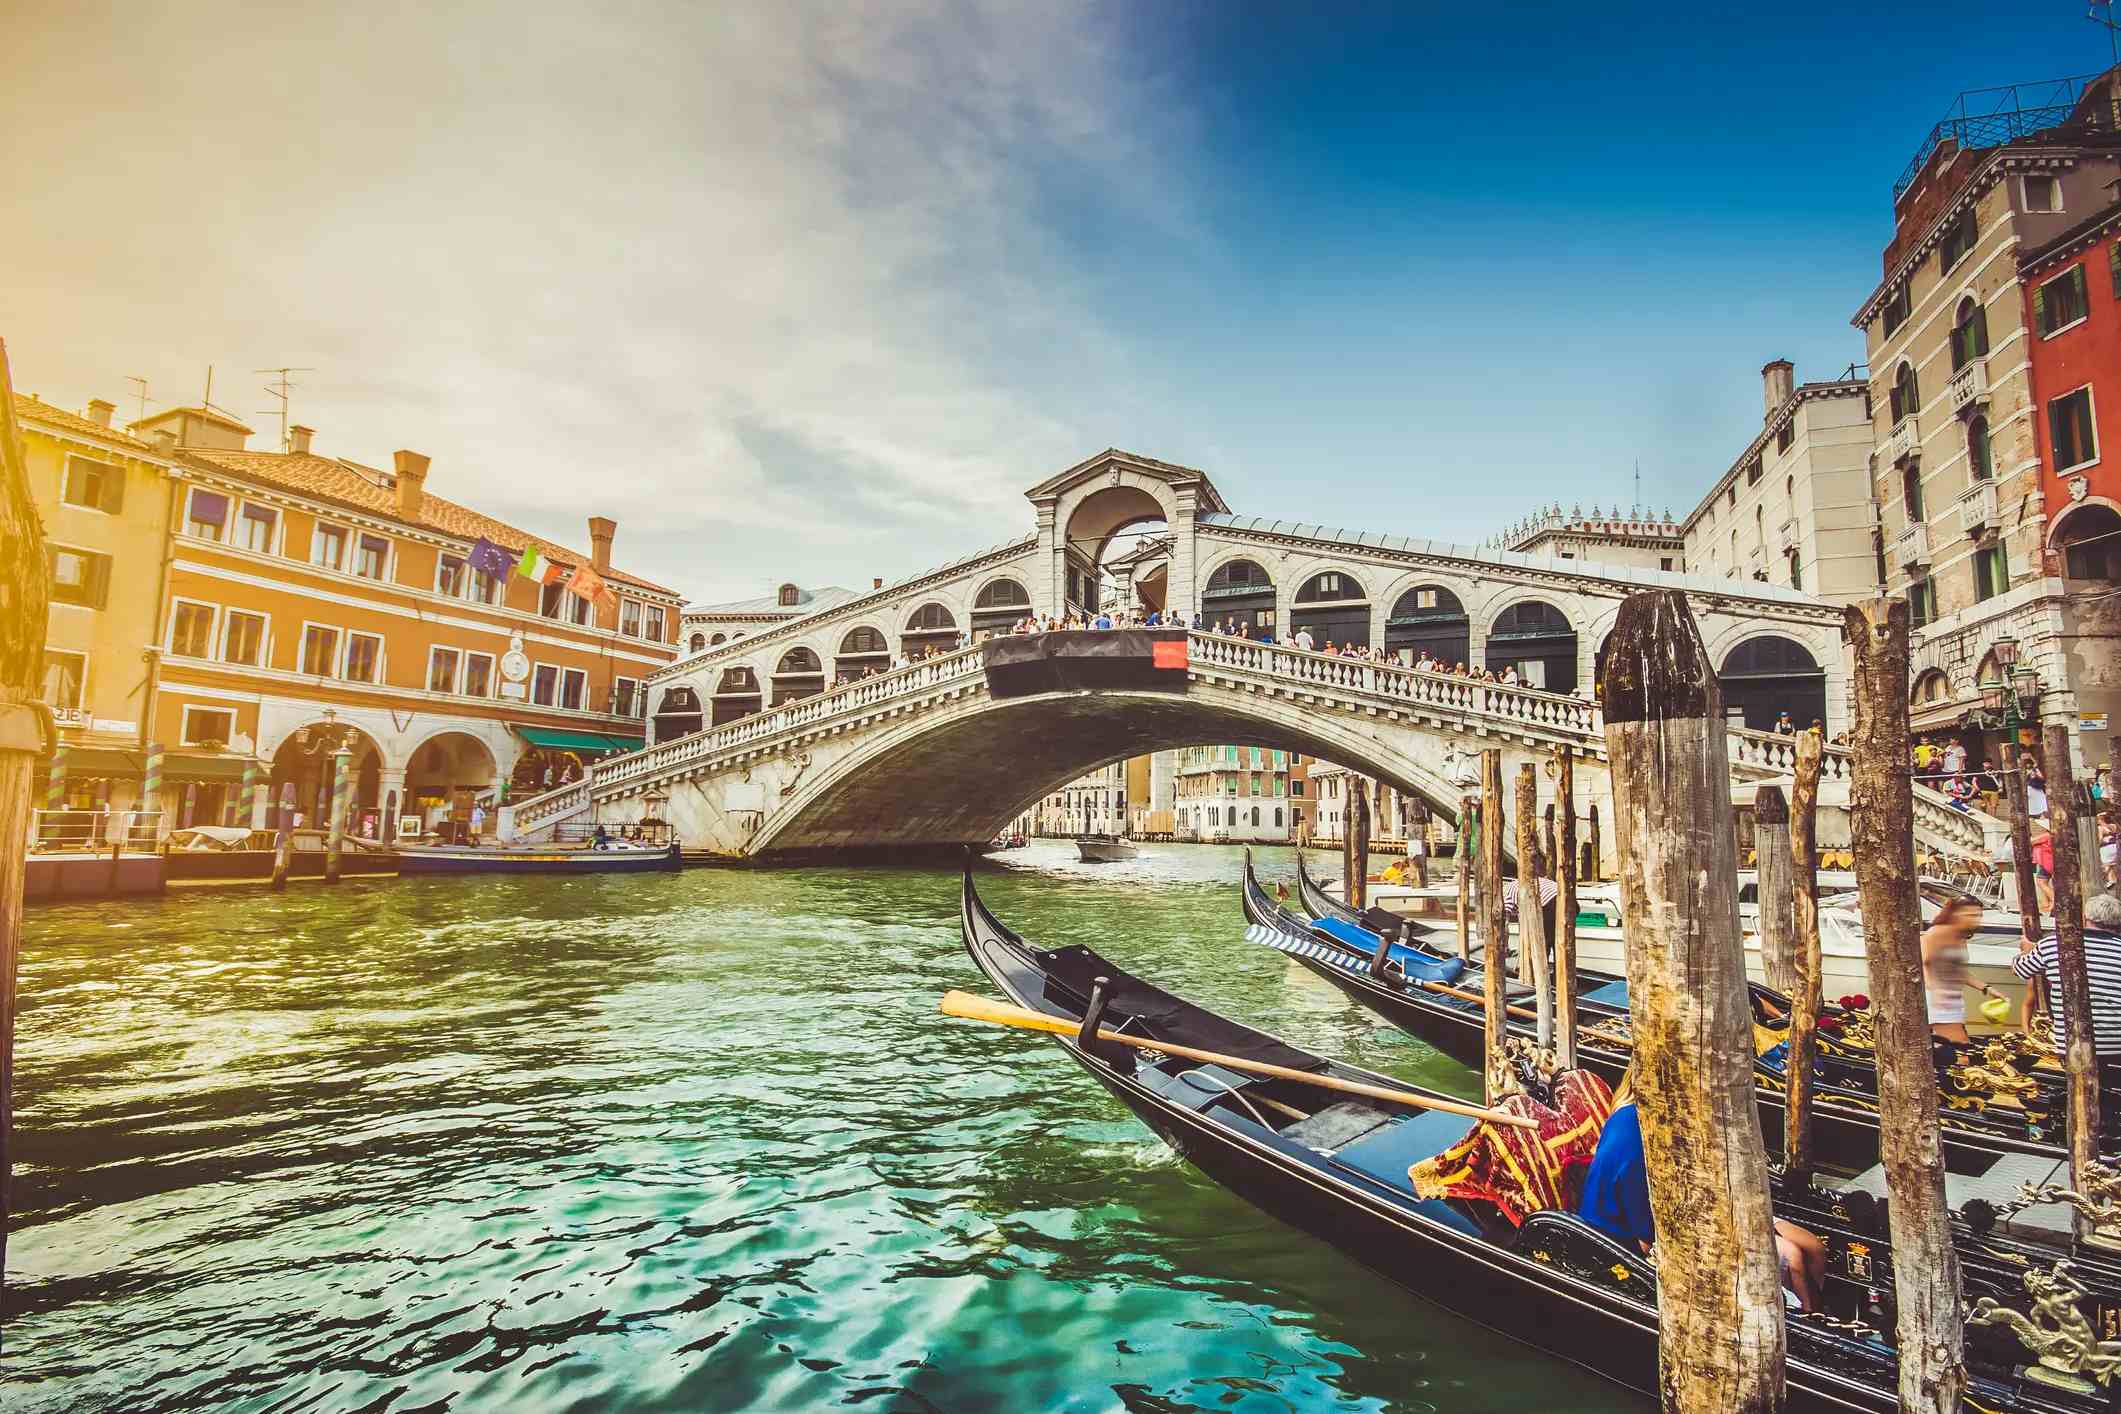 Venice image